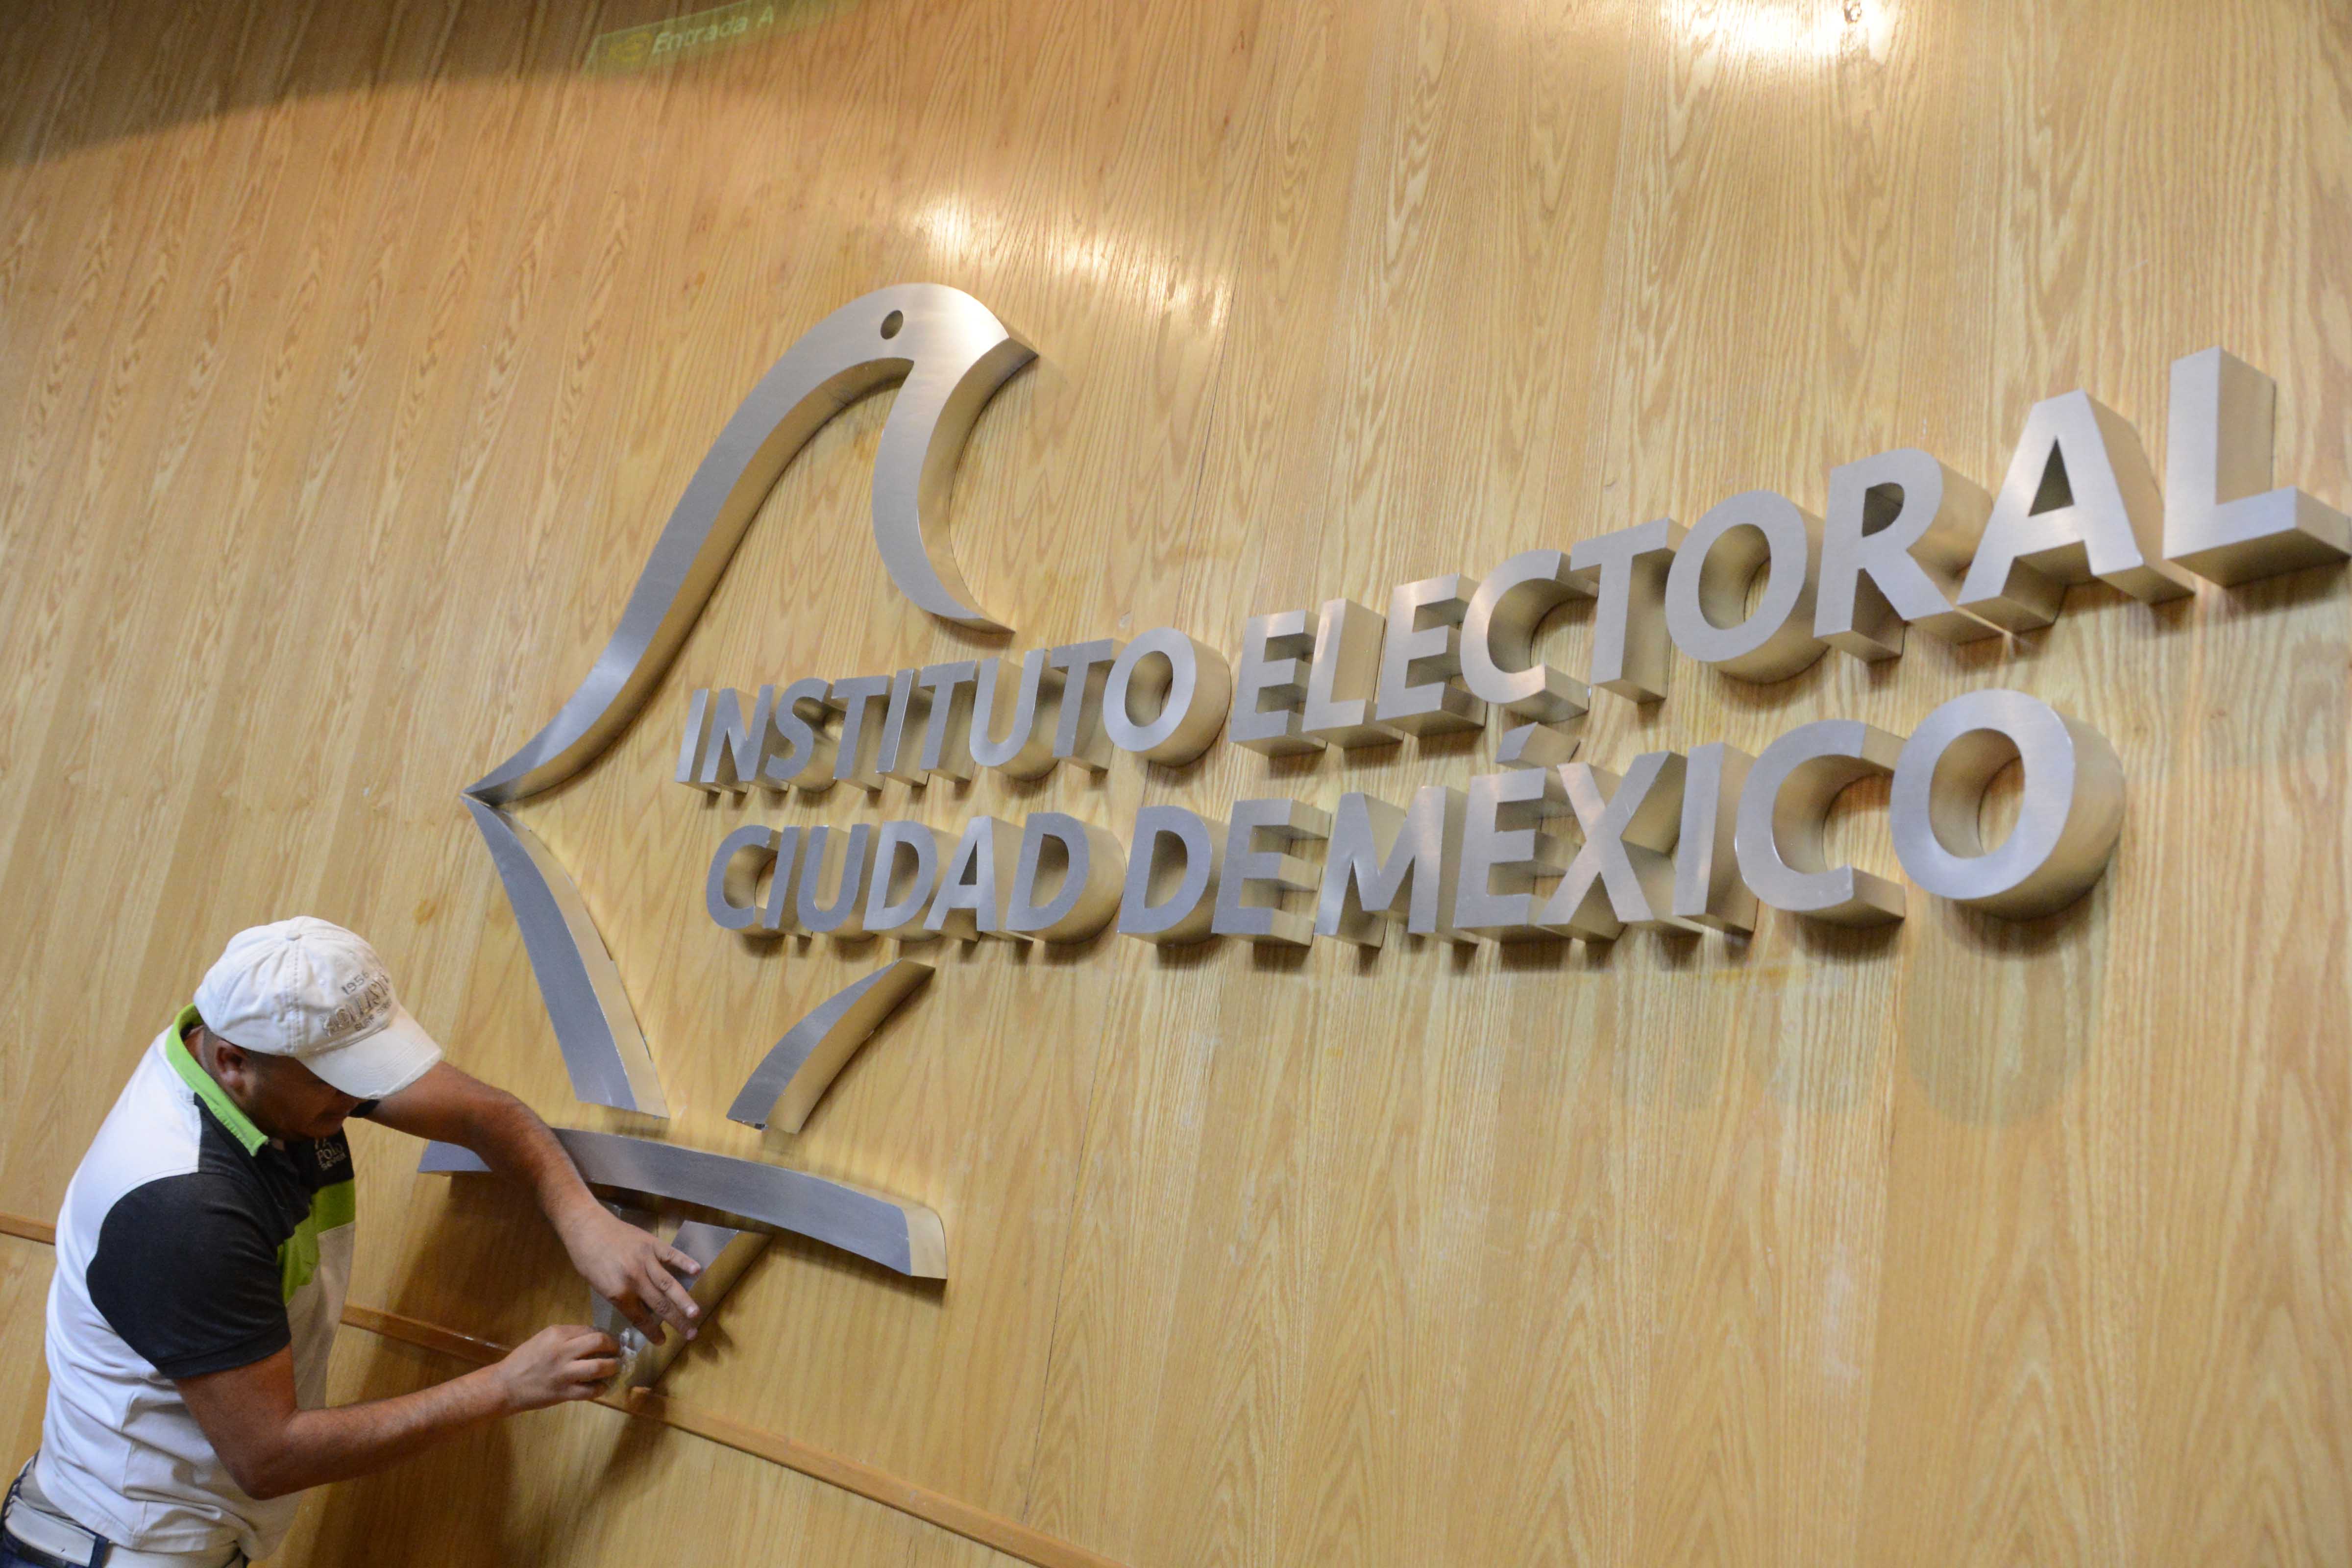 Estrena nueva imagen el Instituto Electoral de la Ciudad de México